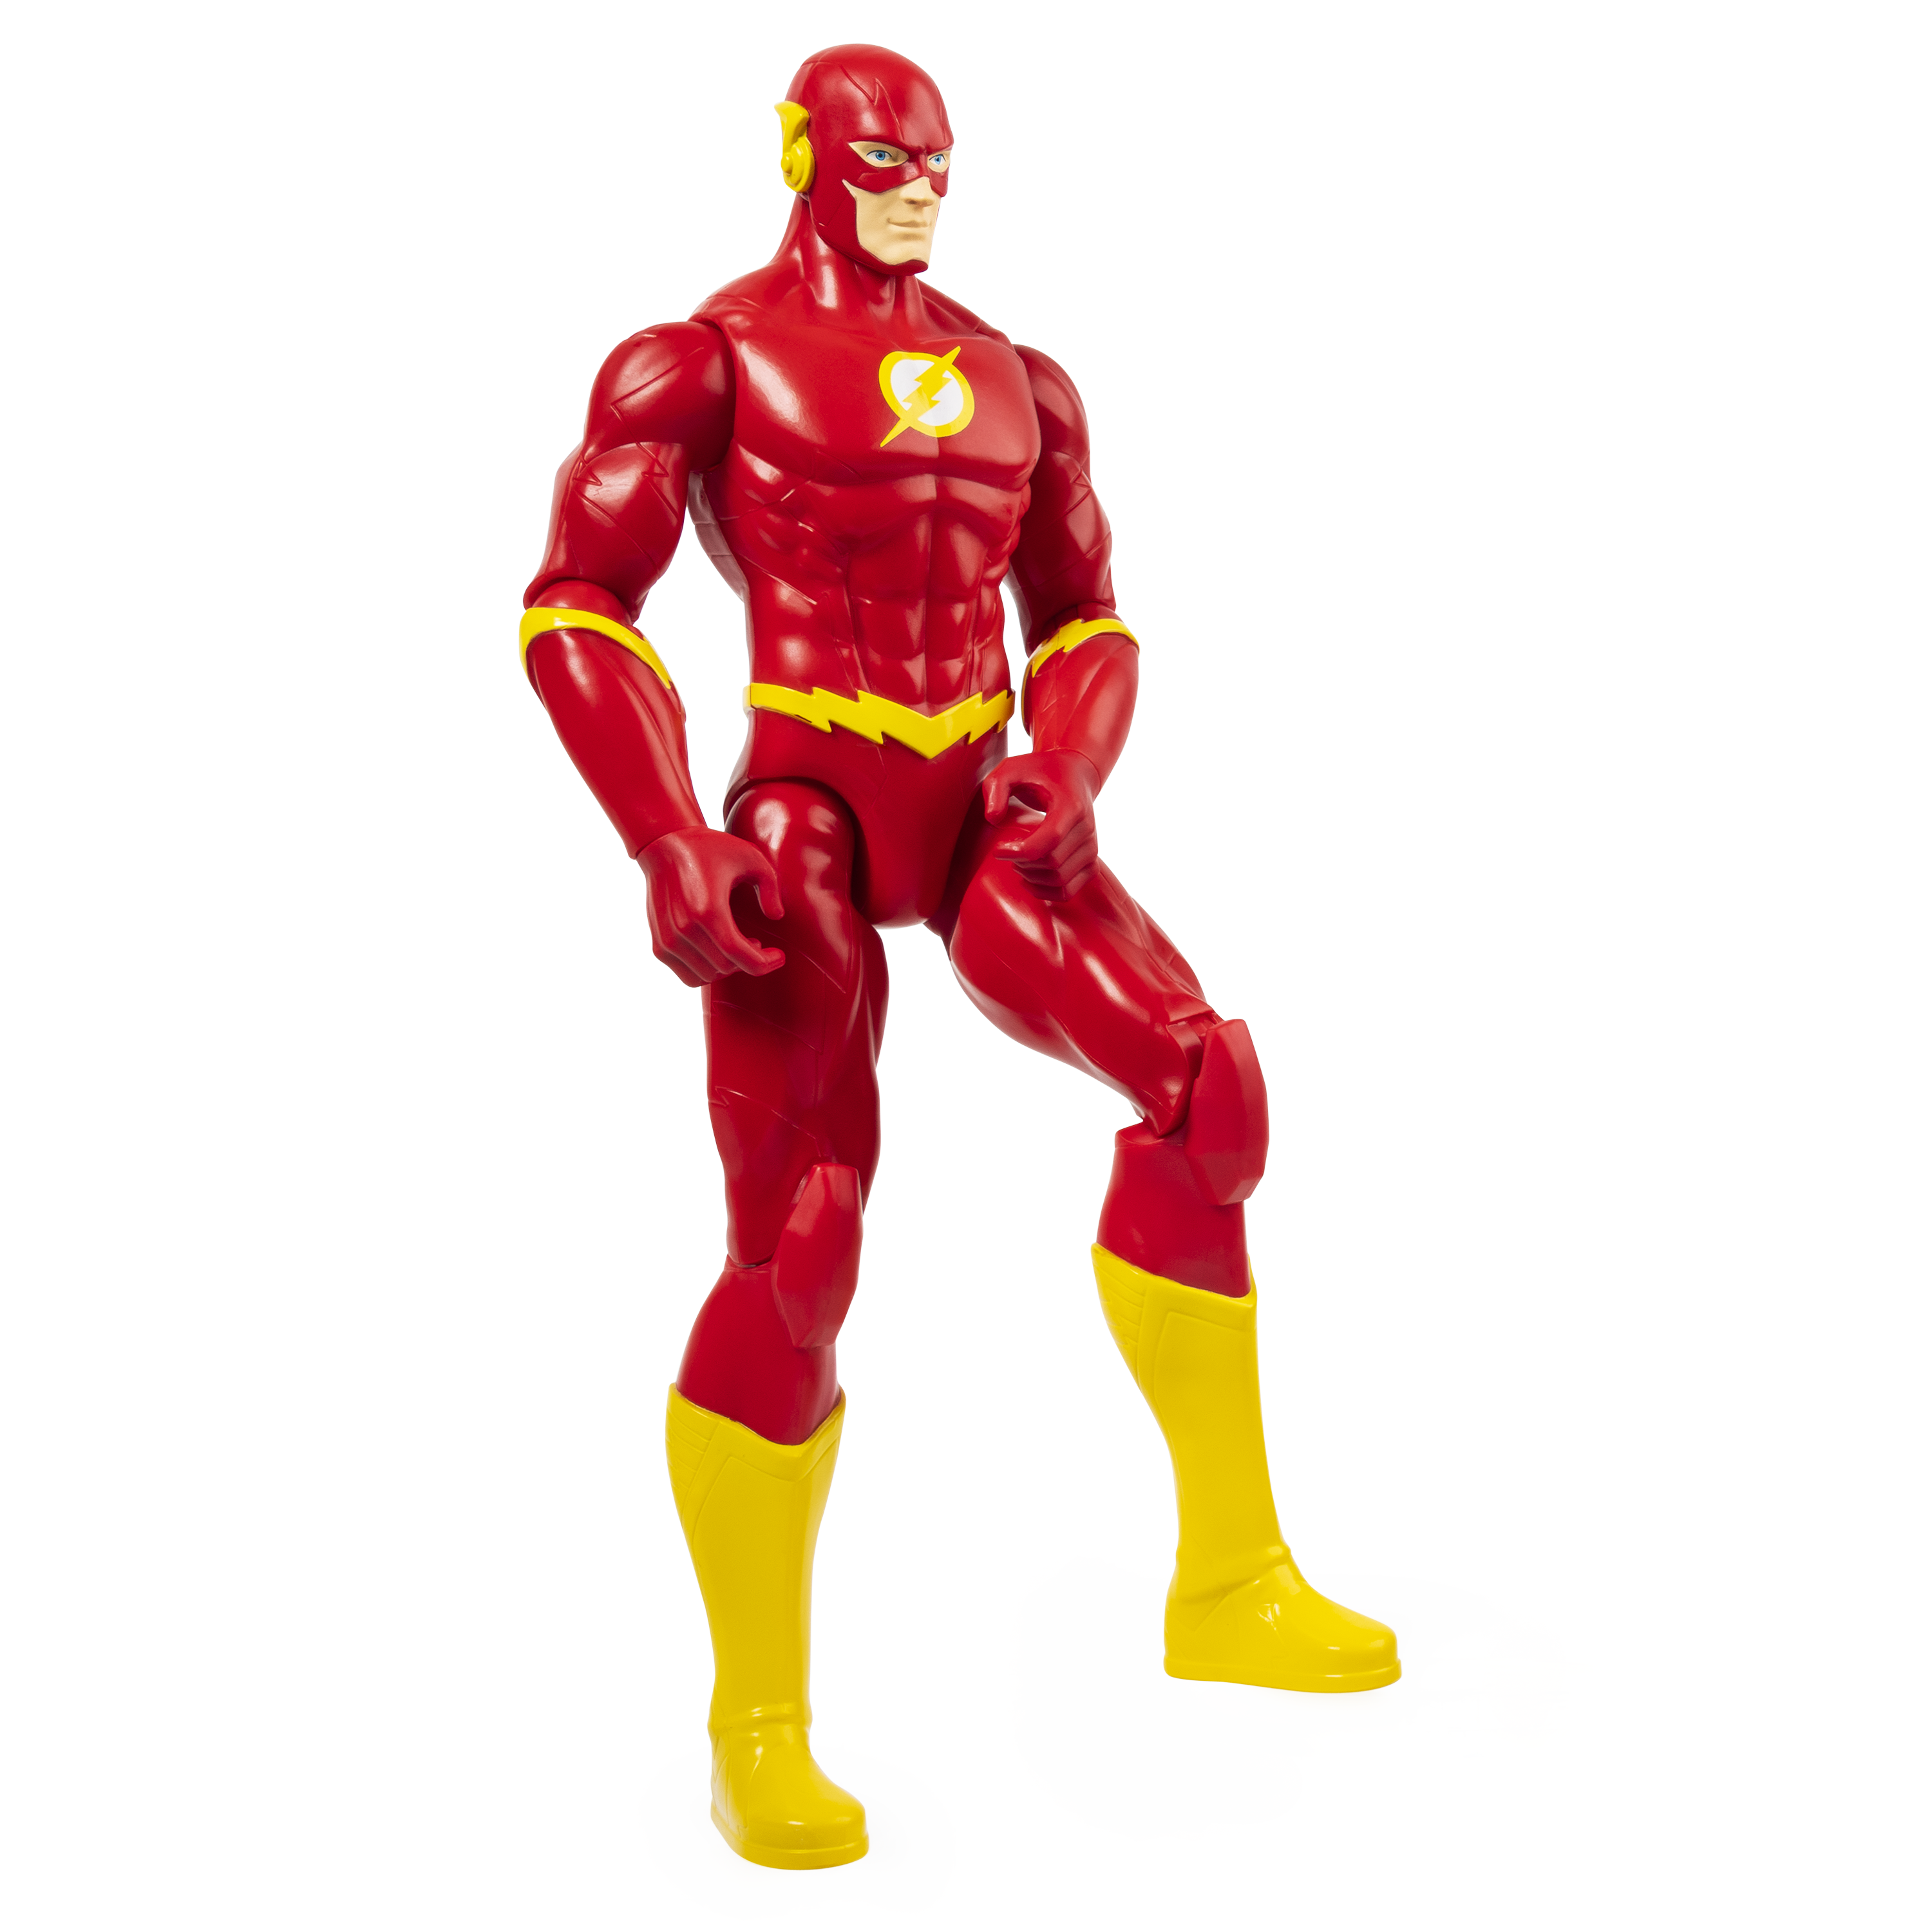 Dc universe personaggio flash in scala 30 cm - DC COMICS